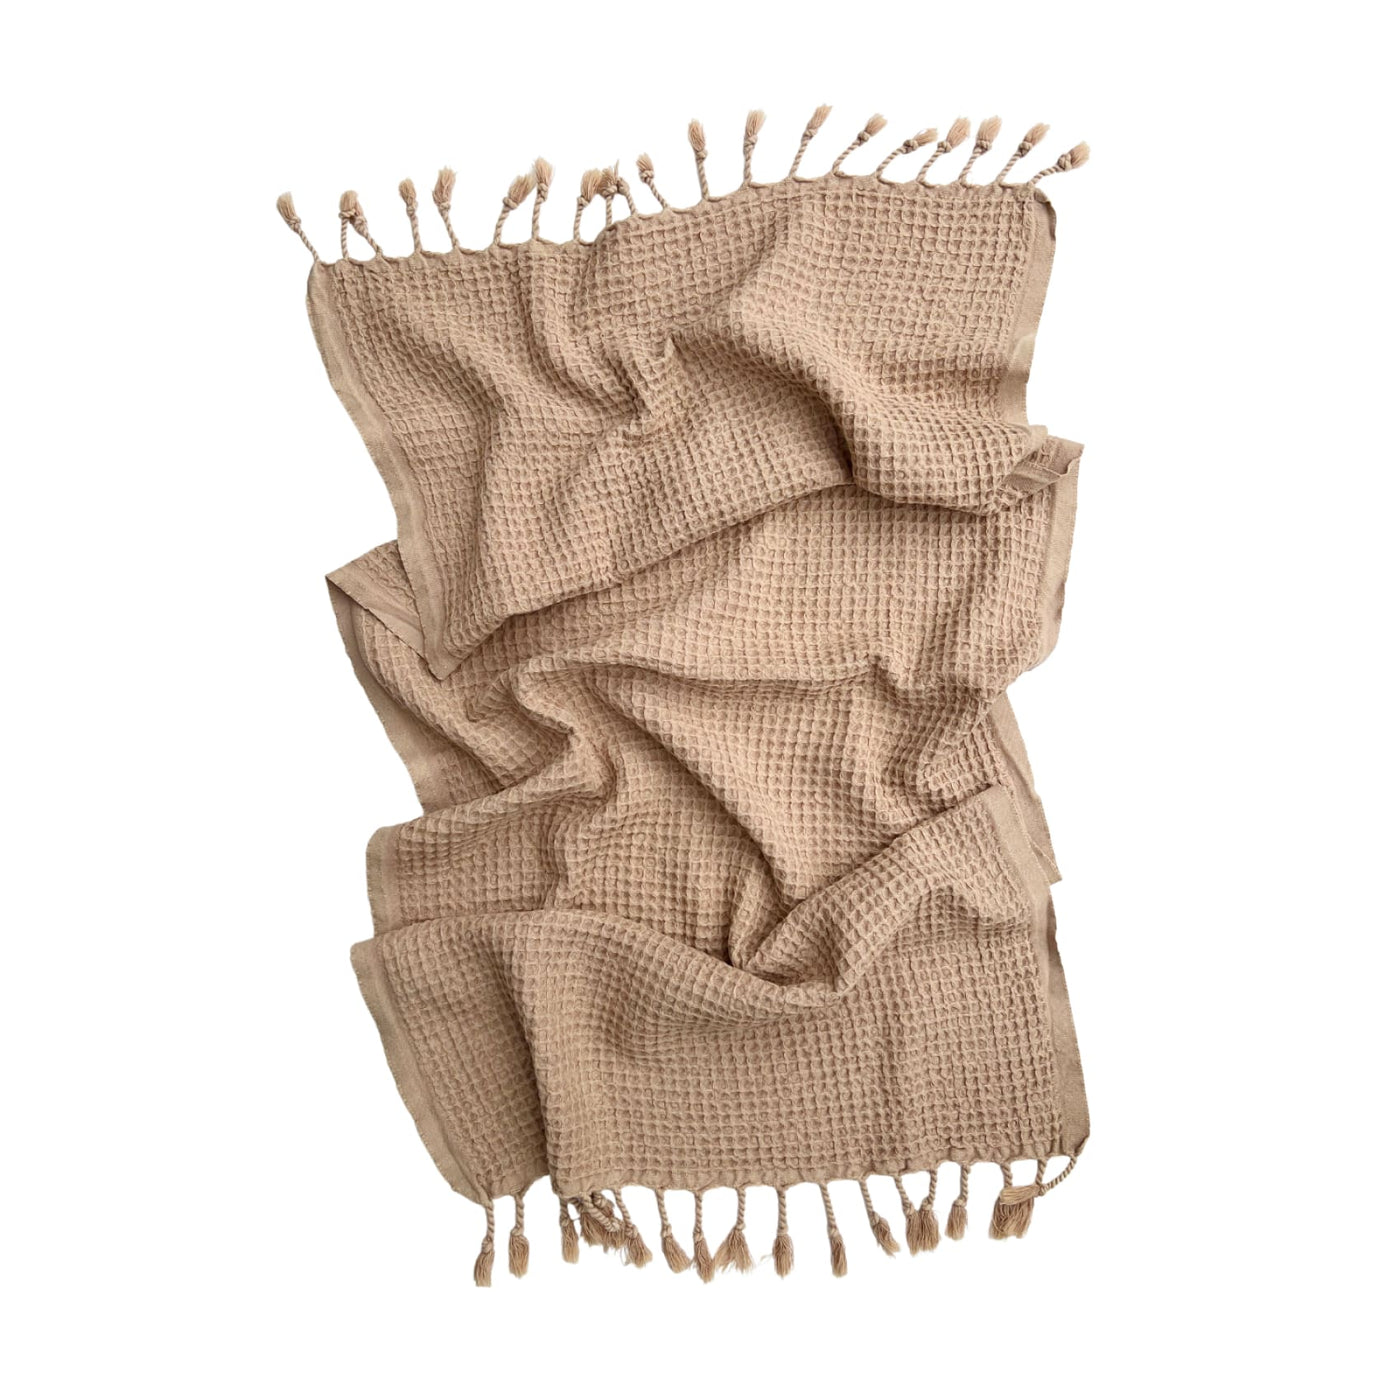 Rulo - Cotton Hand Towel Set - Buy 2 & Save £5 - bundle variant #1 - mbcBundle